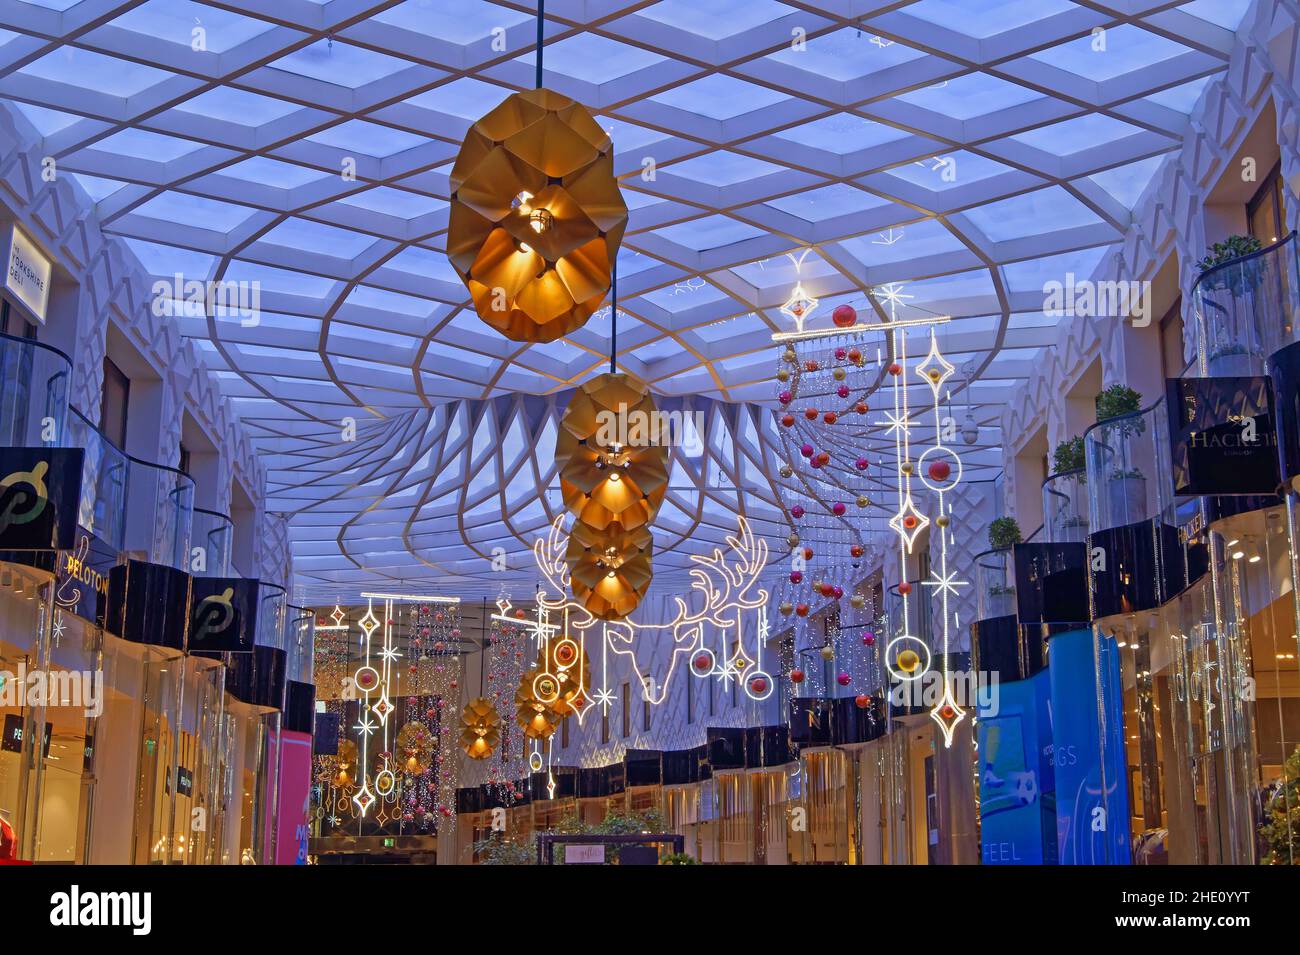 Reino Unido, West Yorkshire, Leeds, Centro Comercial Victoria Gate Decoraciones de Navidad y techos coloridos Foto de stock